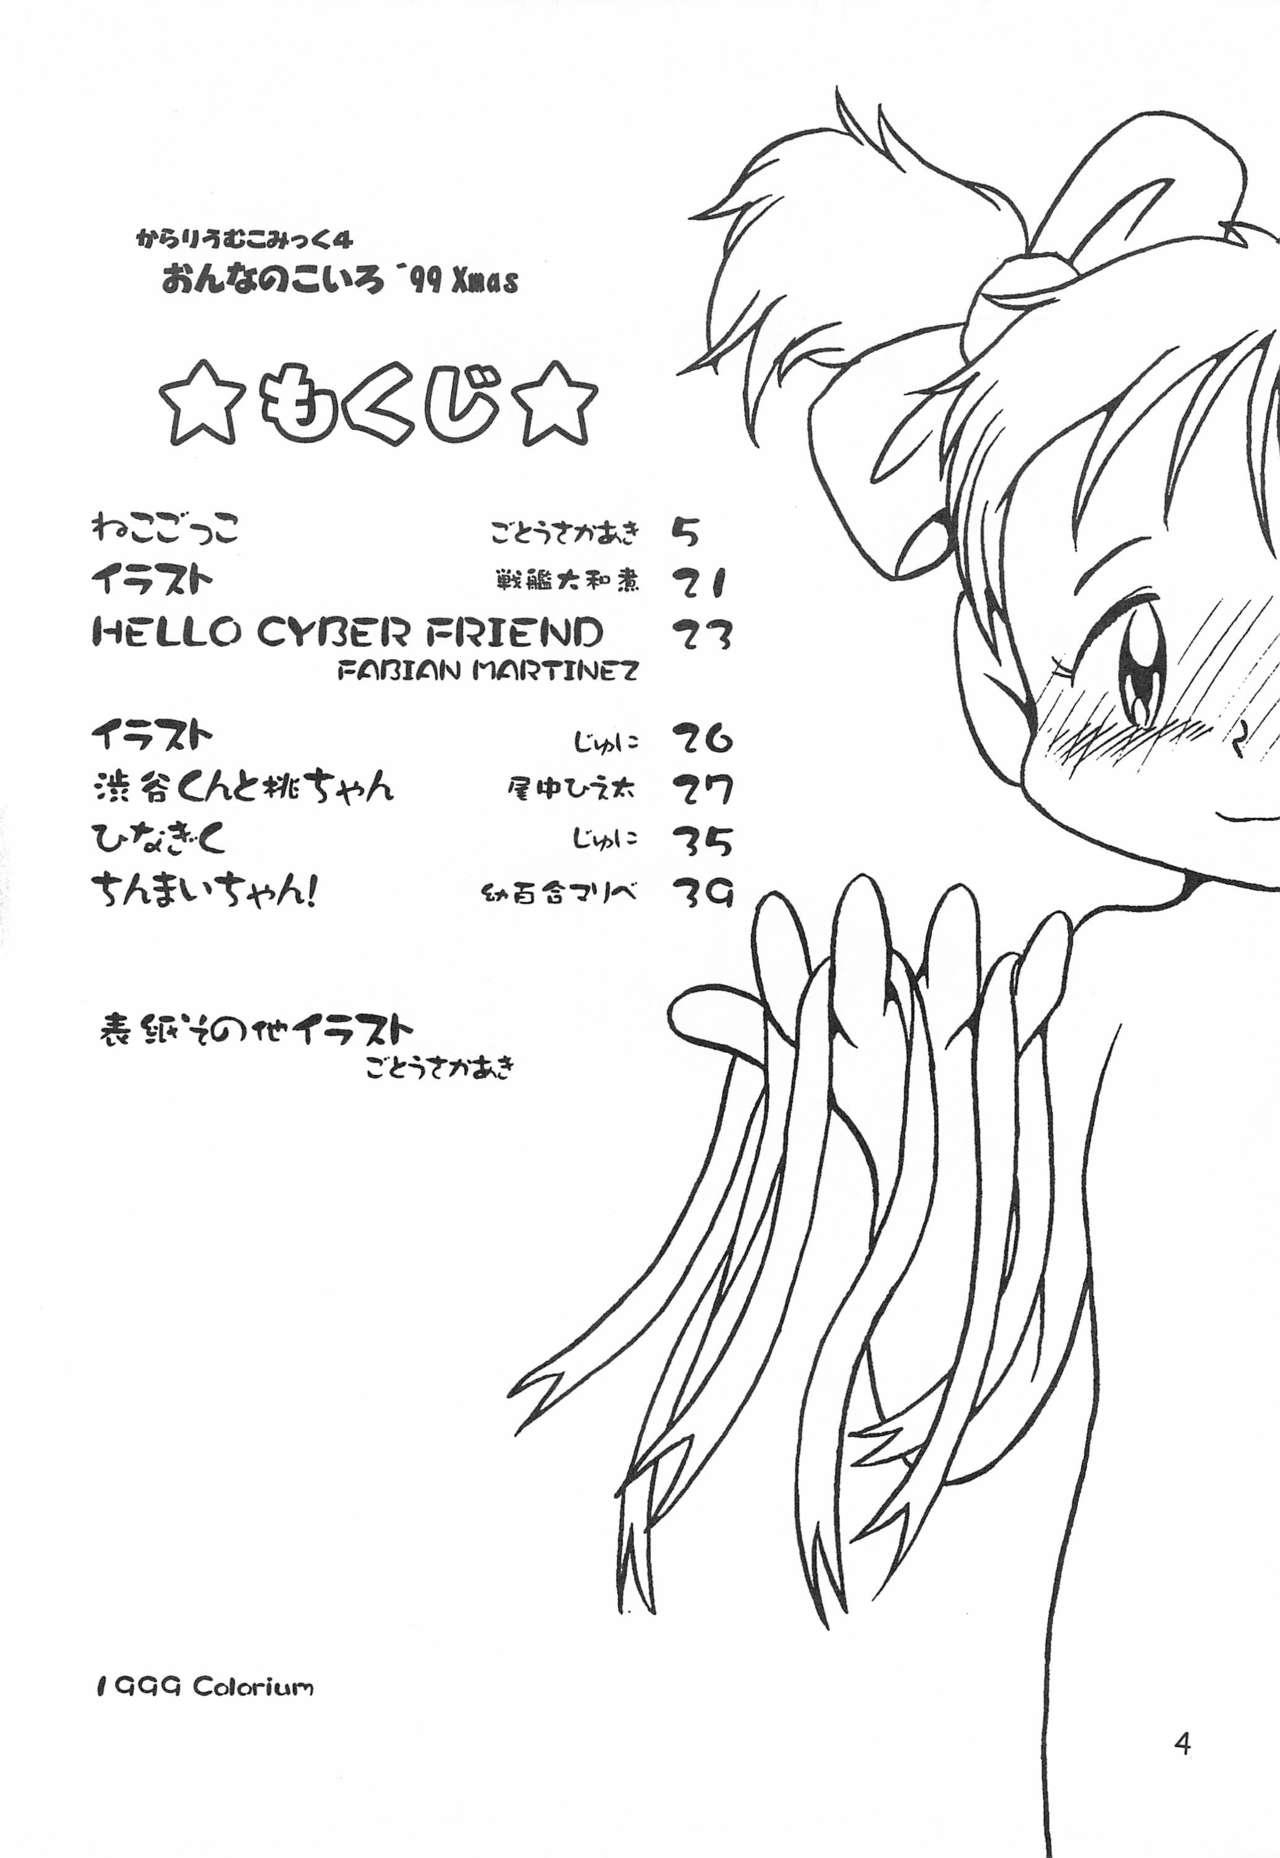 Free Colorium Comic 4 Onna no ko Iro '99 Xmas - Original Girls - Page 6